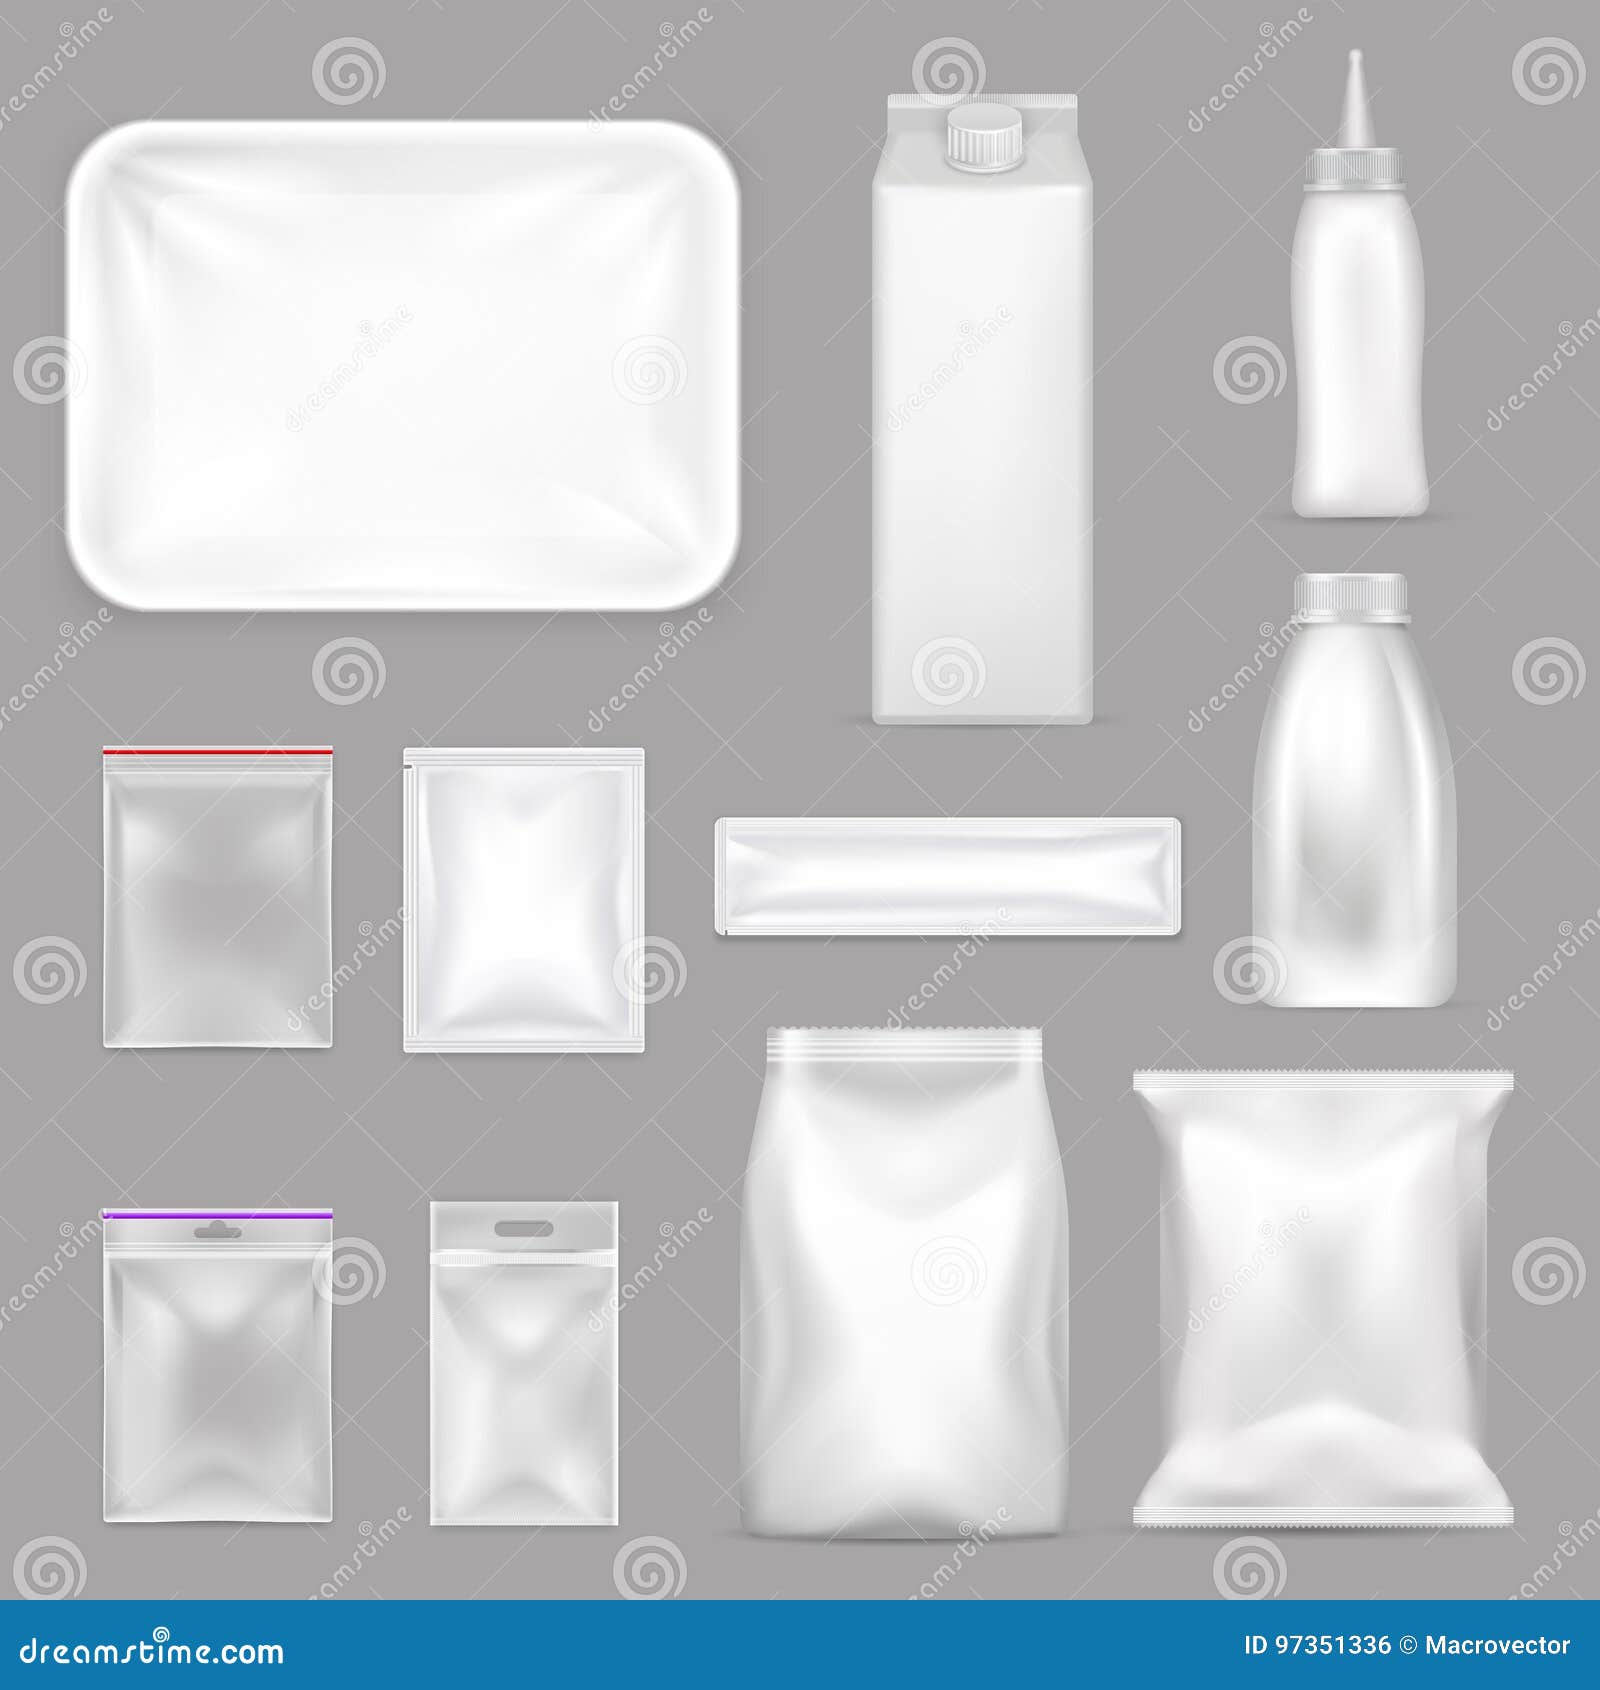 blank food packaging realistic set